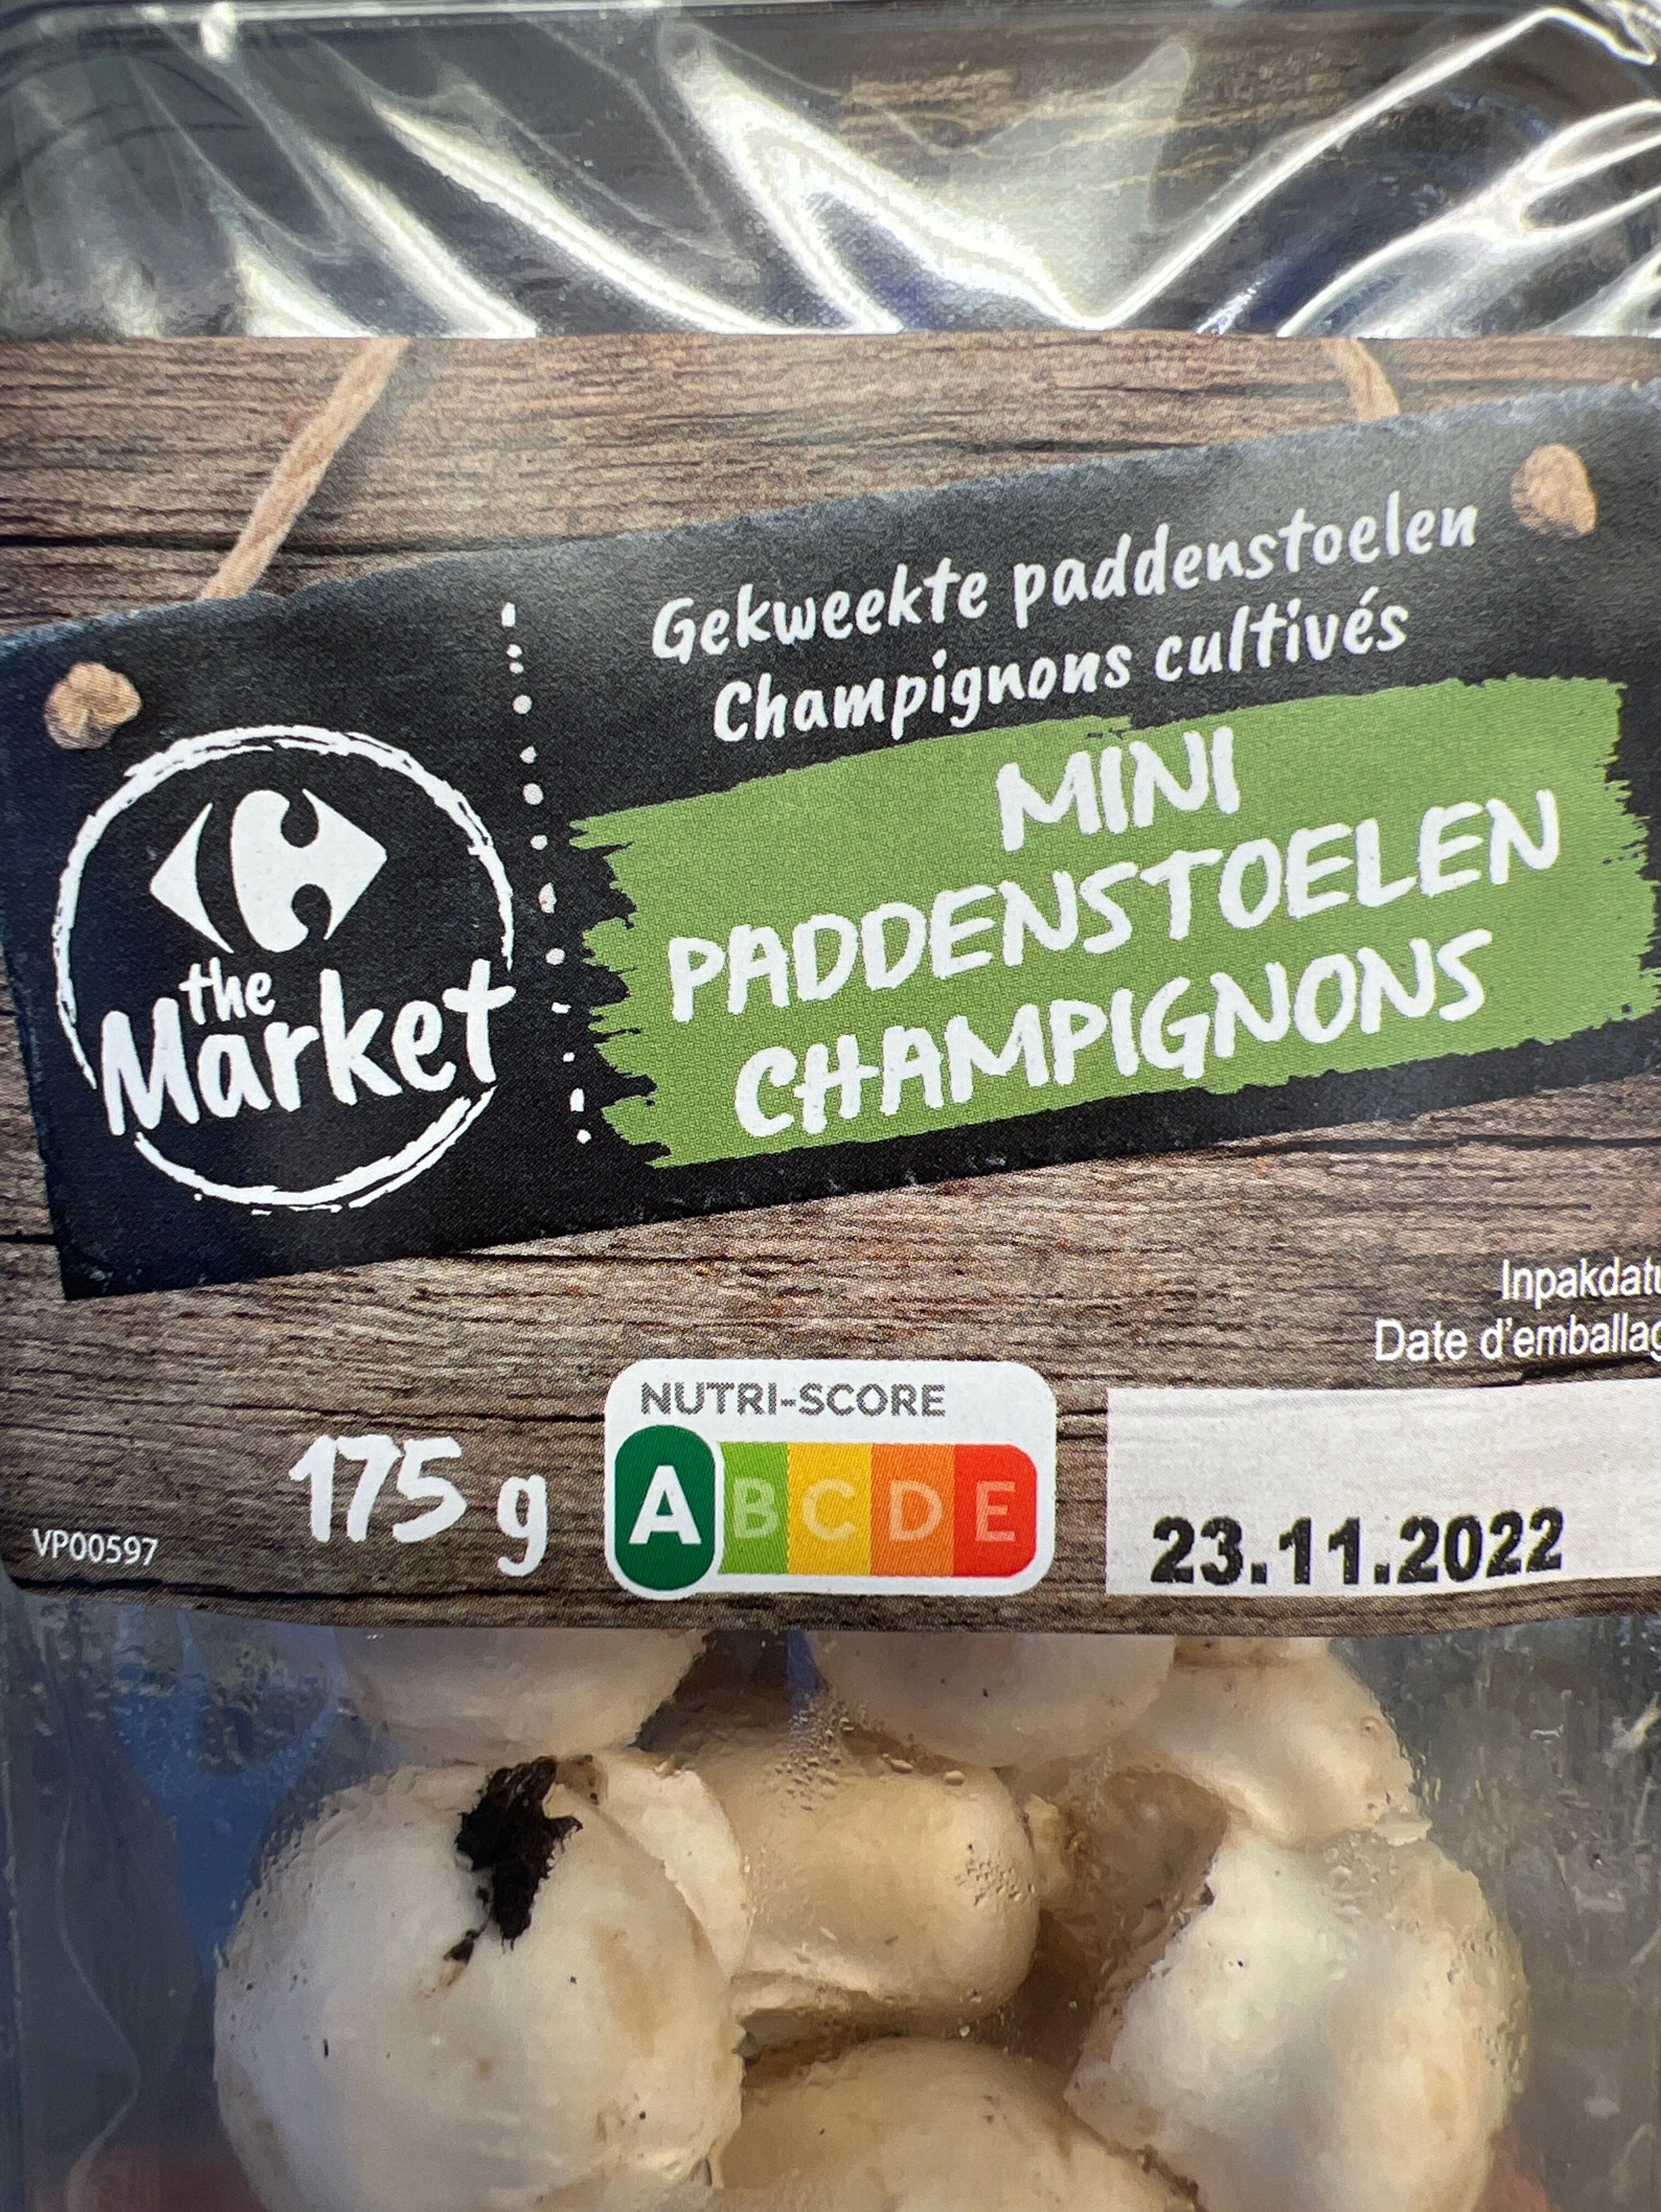 mini paddenstoelen champignons - Produit - nl